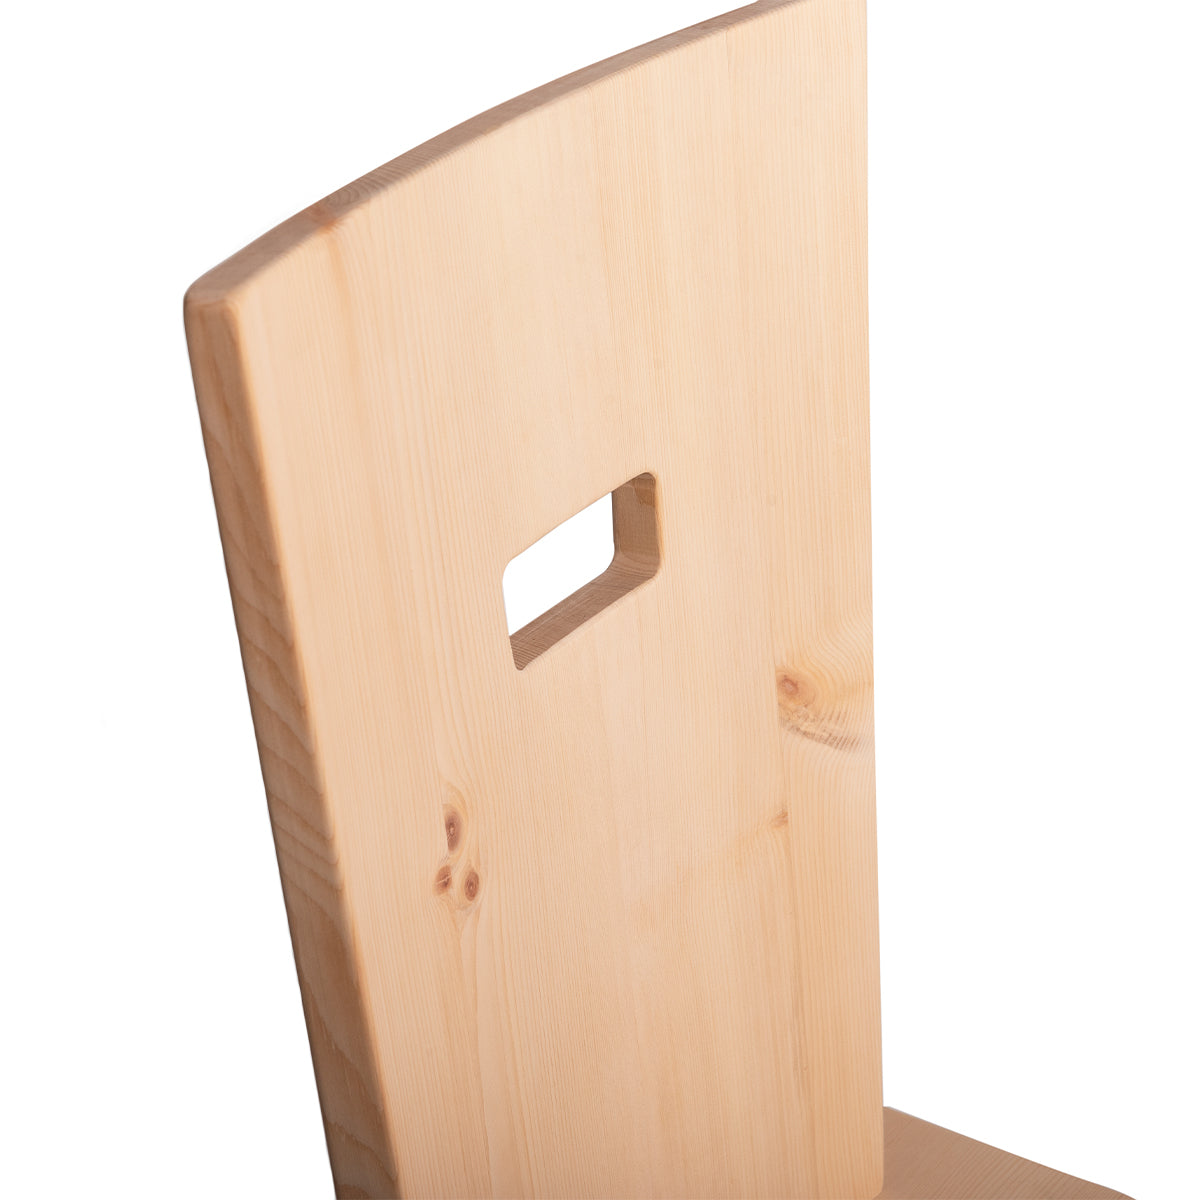 Eleganter Stuhl  'Pristine' | Vollholz | Griff rechteckig | in verschiedenen Holzarten | Hergestellt in Südtirol